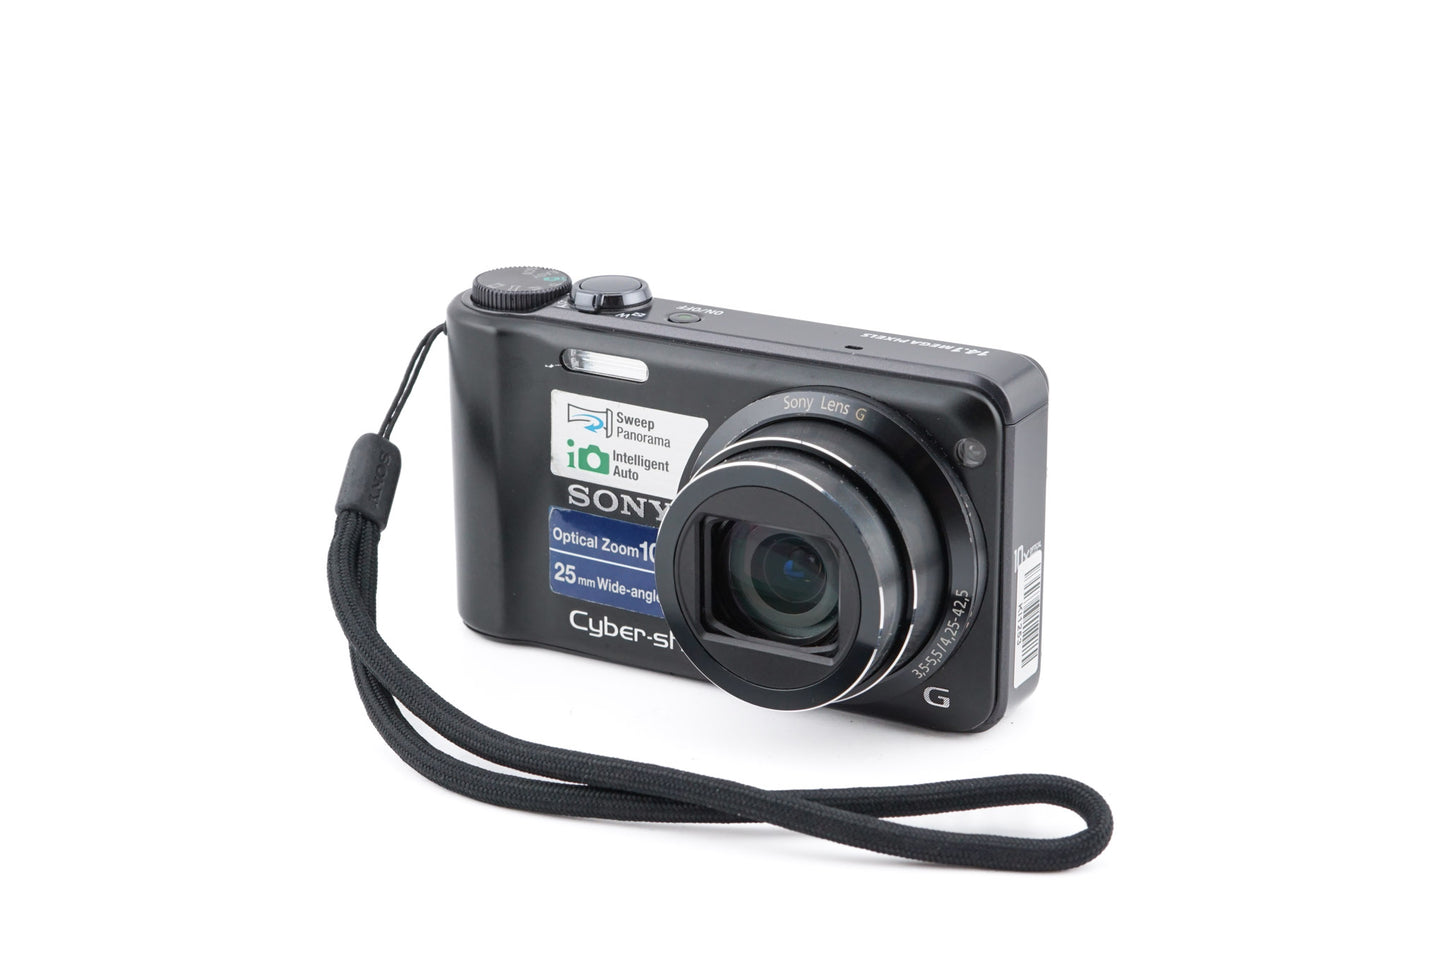 Sony Cybershot DSC-H55 - Camera